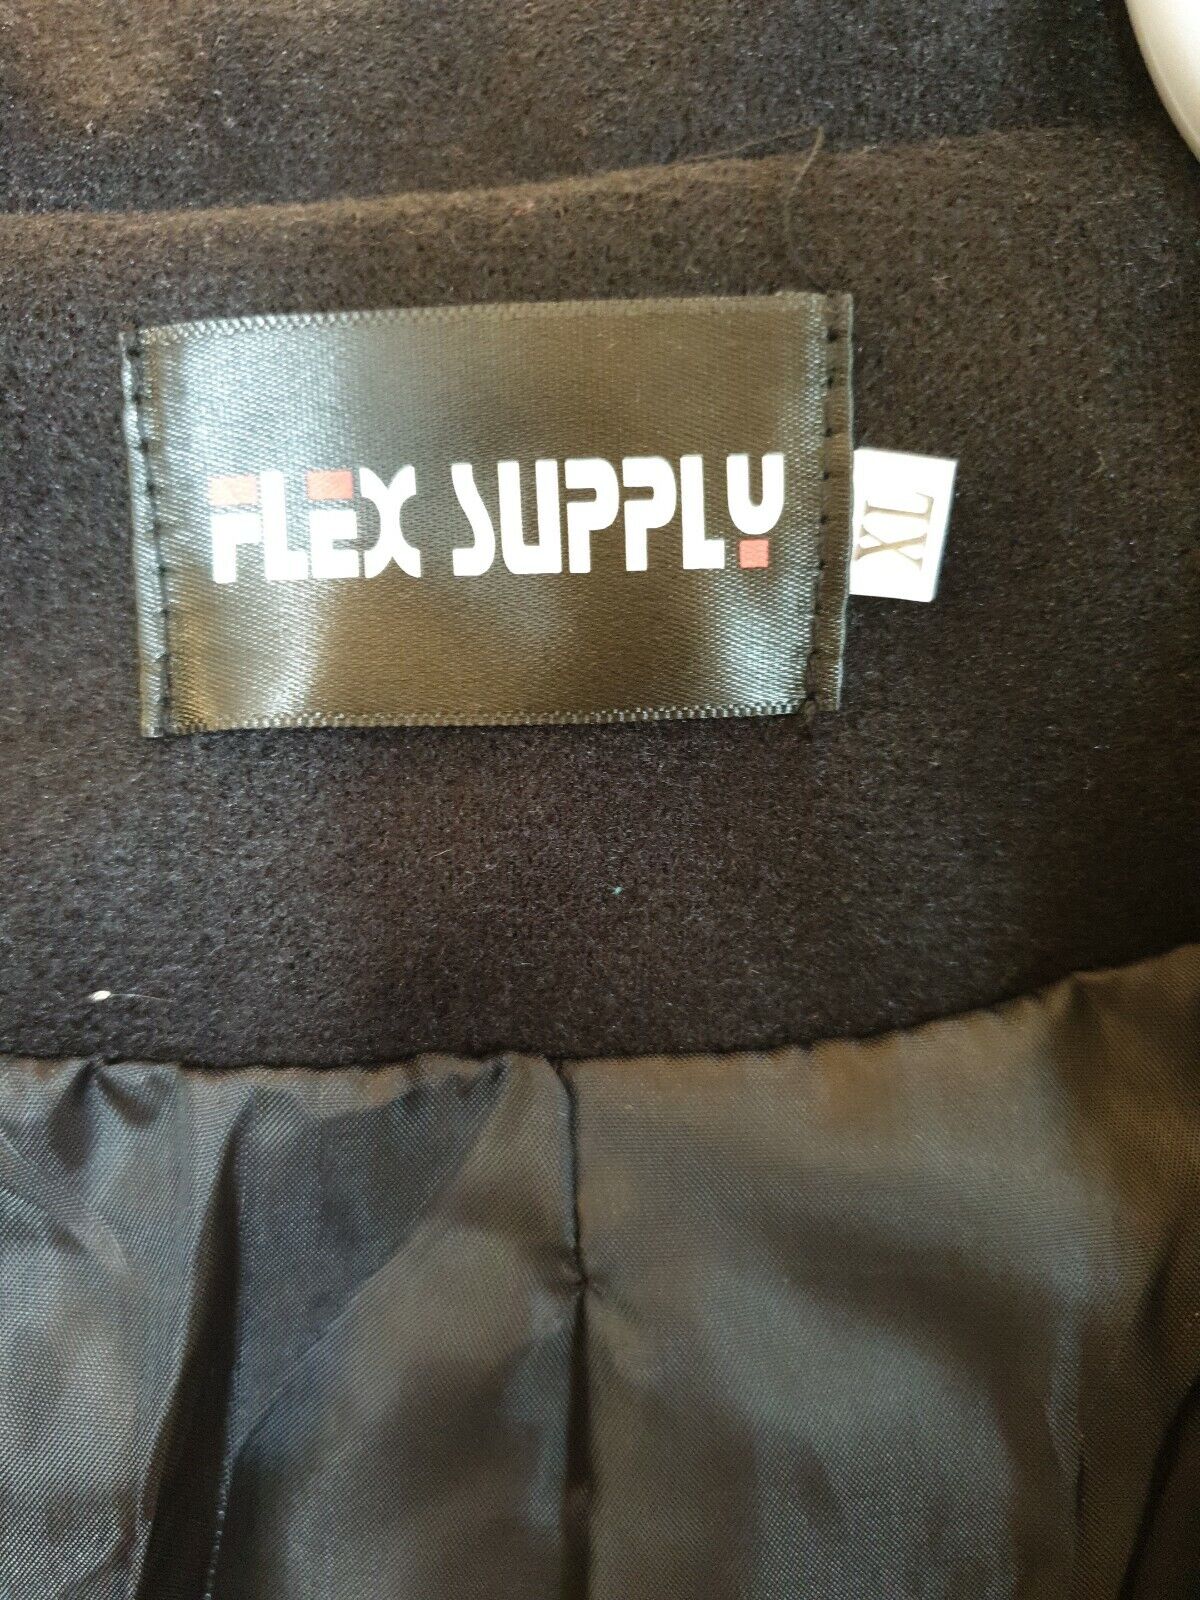 Flex Supply Black Coat Size XL Ref Y15